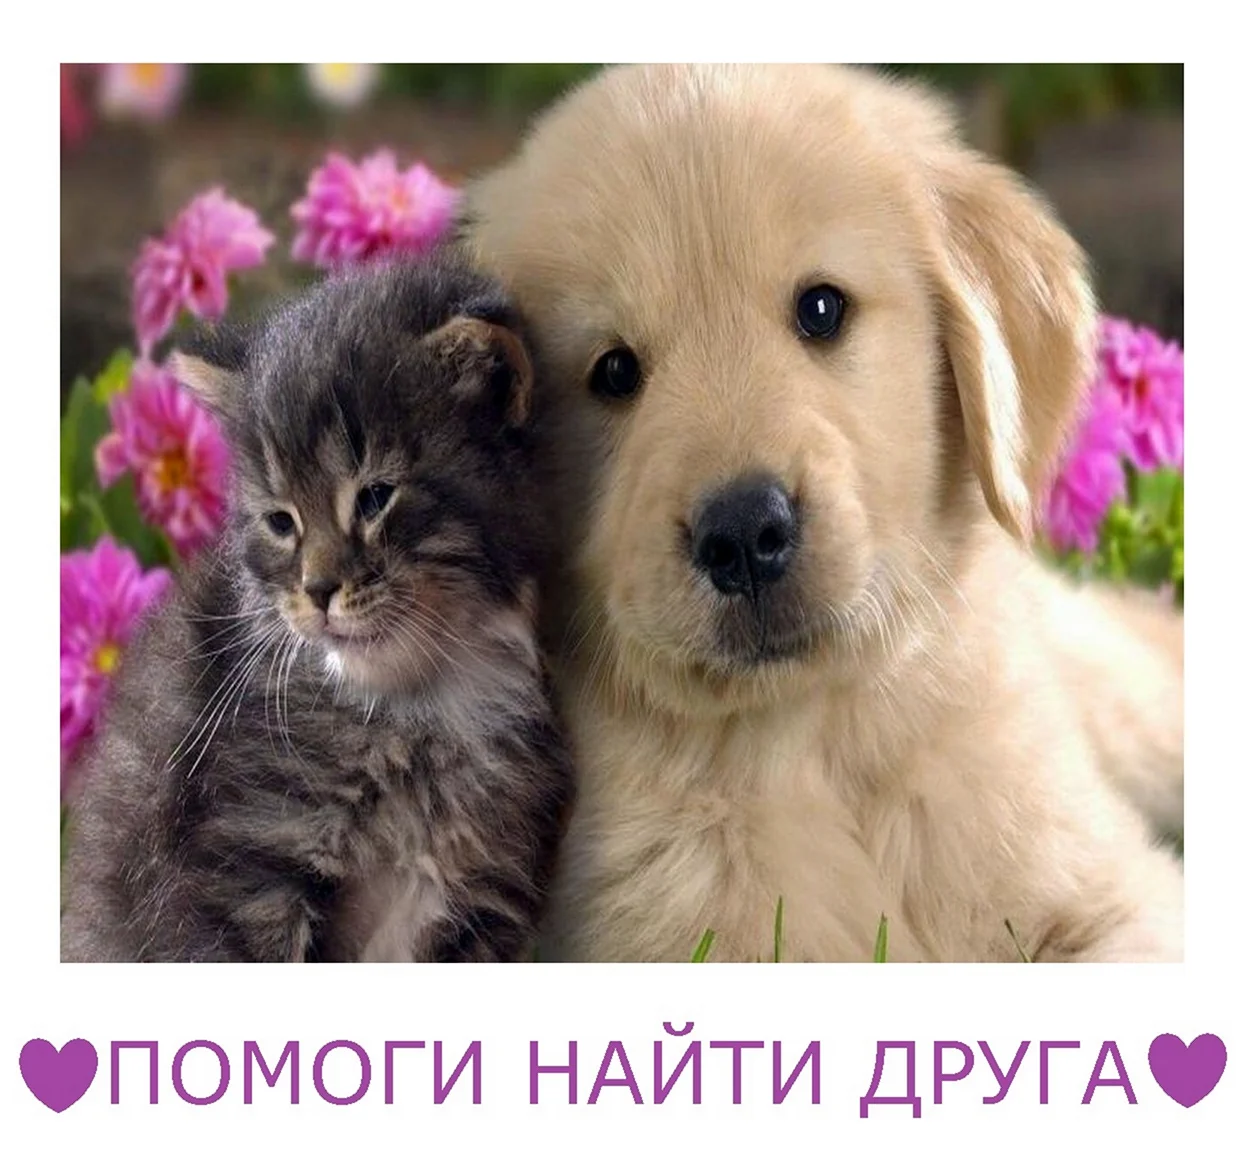 Thomas Cat and Dog. Поздравление